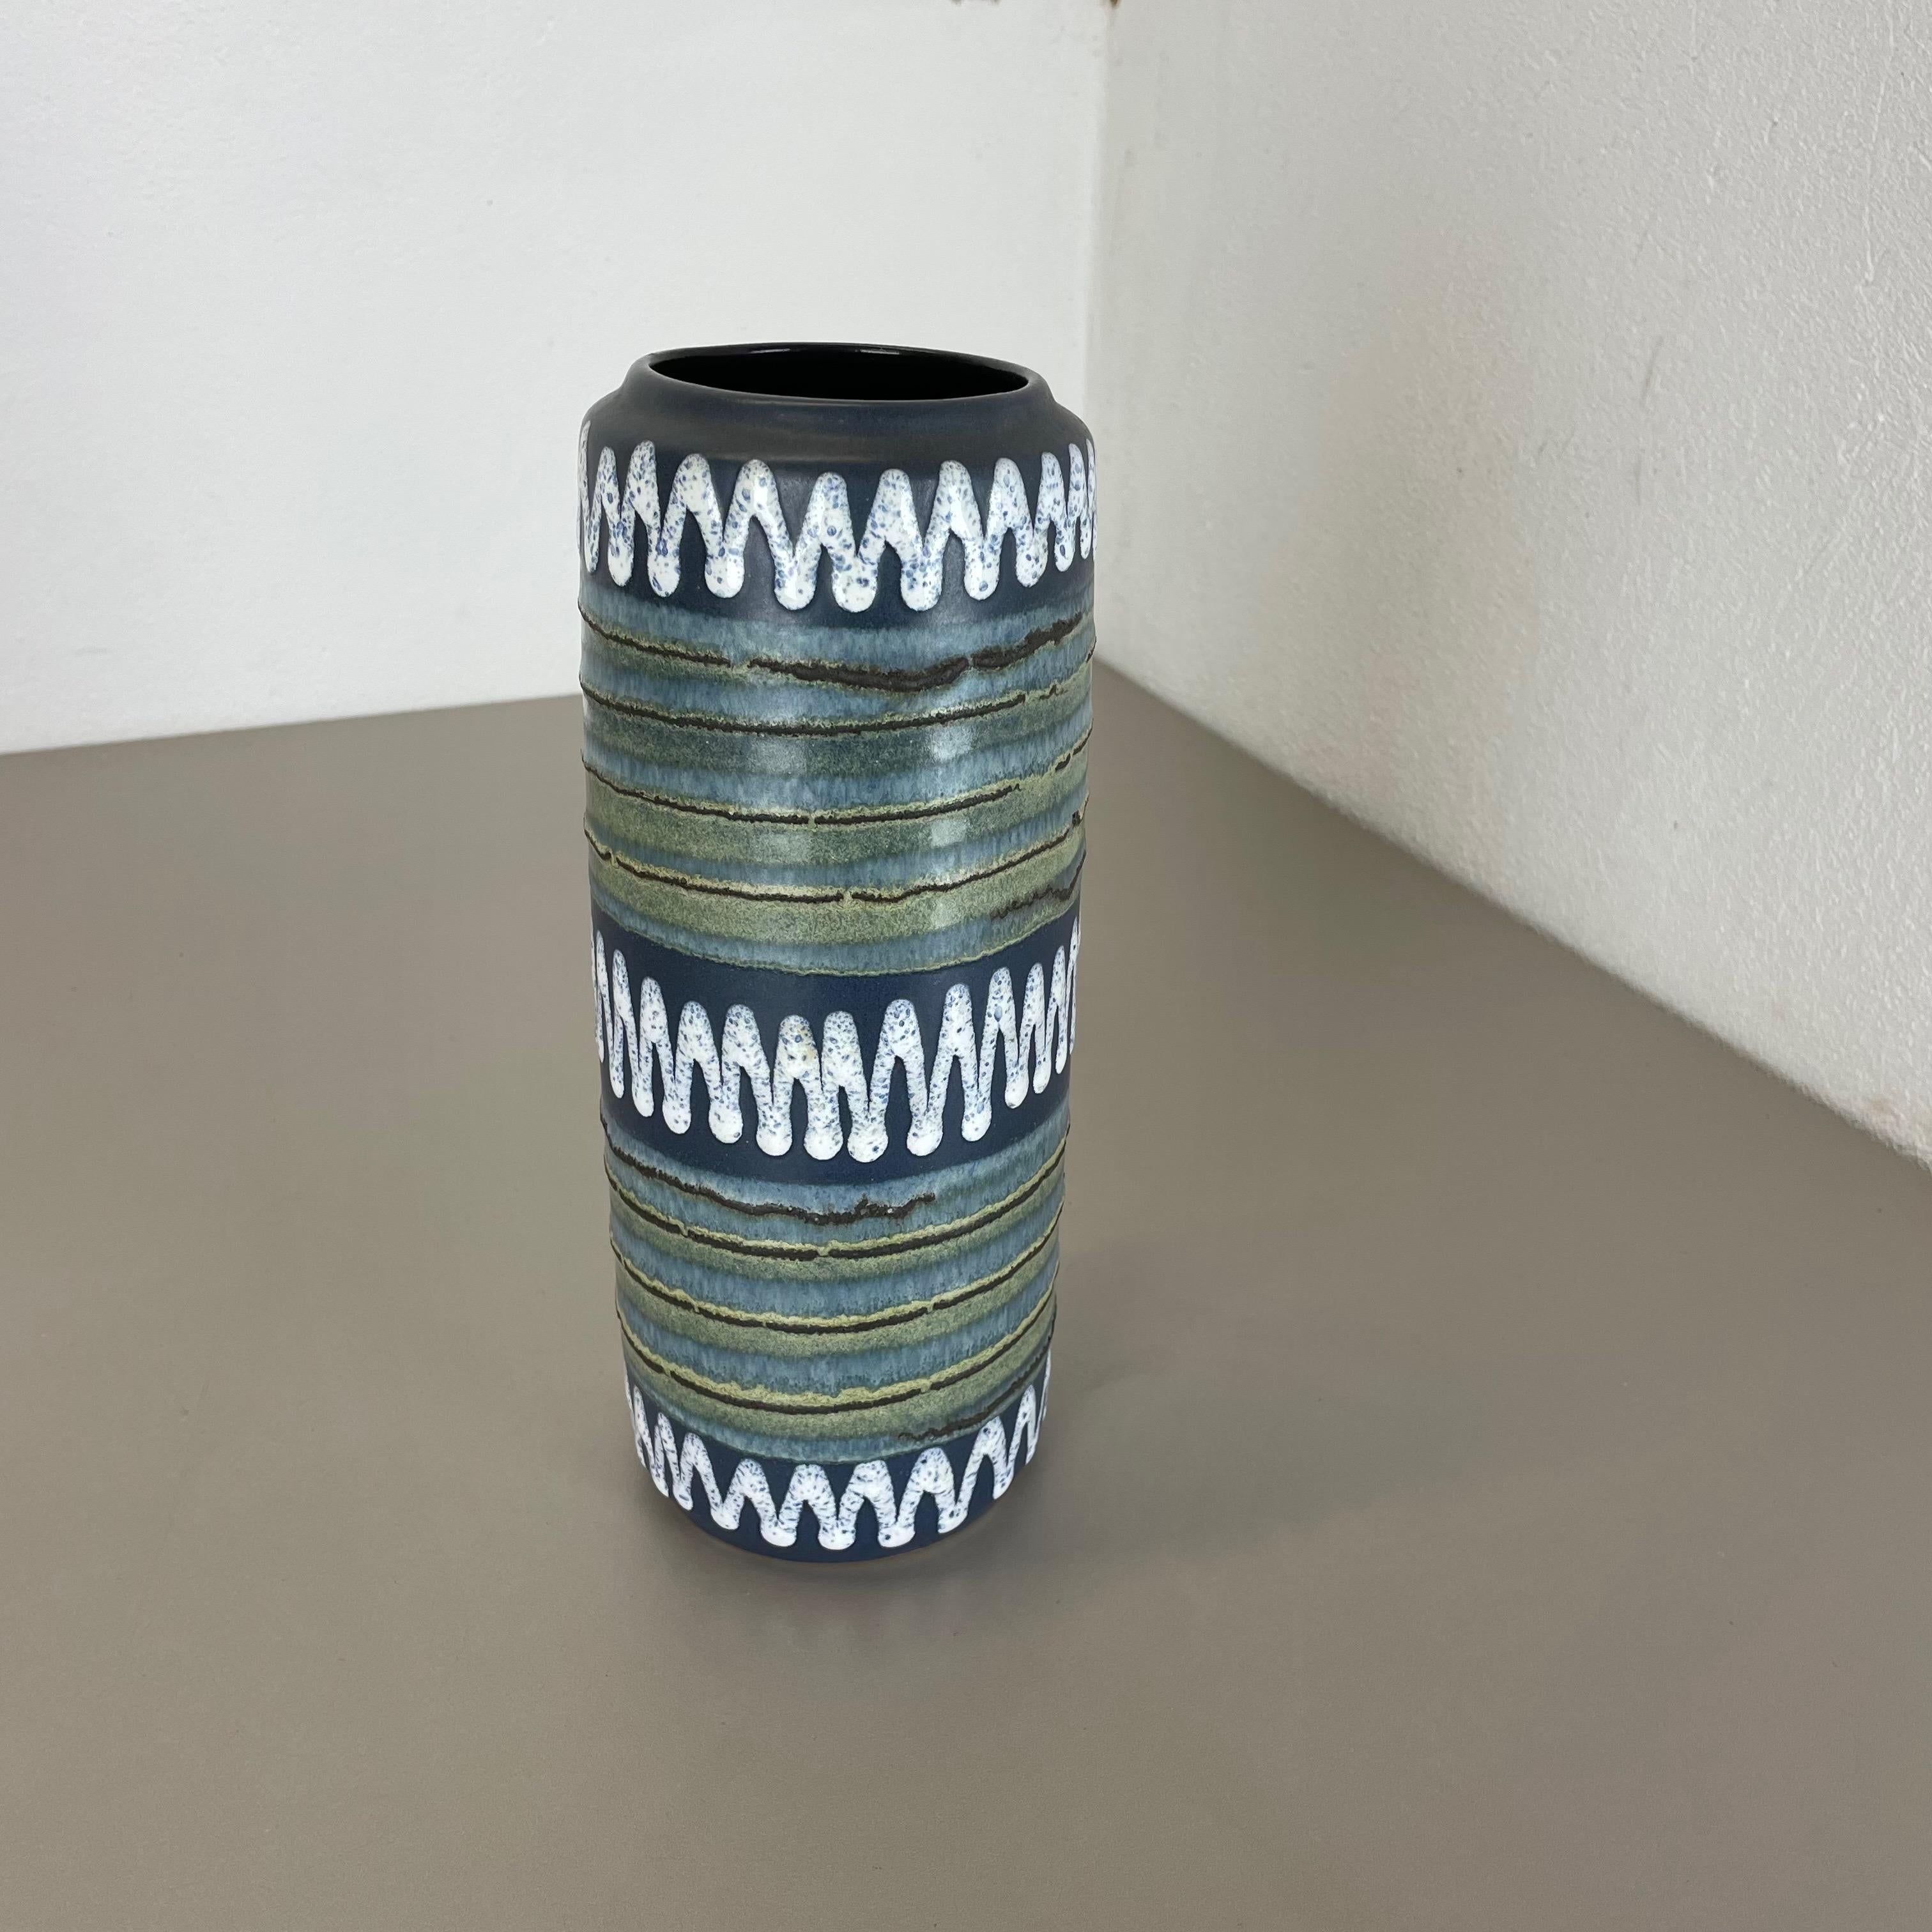 Artikel:

Fette Lava-Kunstvase, PROTOTYPE GLAZE


Produzent:

Scheurich, Deutschland



Jahrzehnt:

1970s




Diese originelle Vintage-Vase wurde in den 1970er Jahren in Deutschland hergestellt. Sie ist aus Keramik in fetter Lava-Optik mit